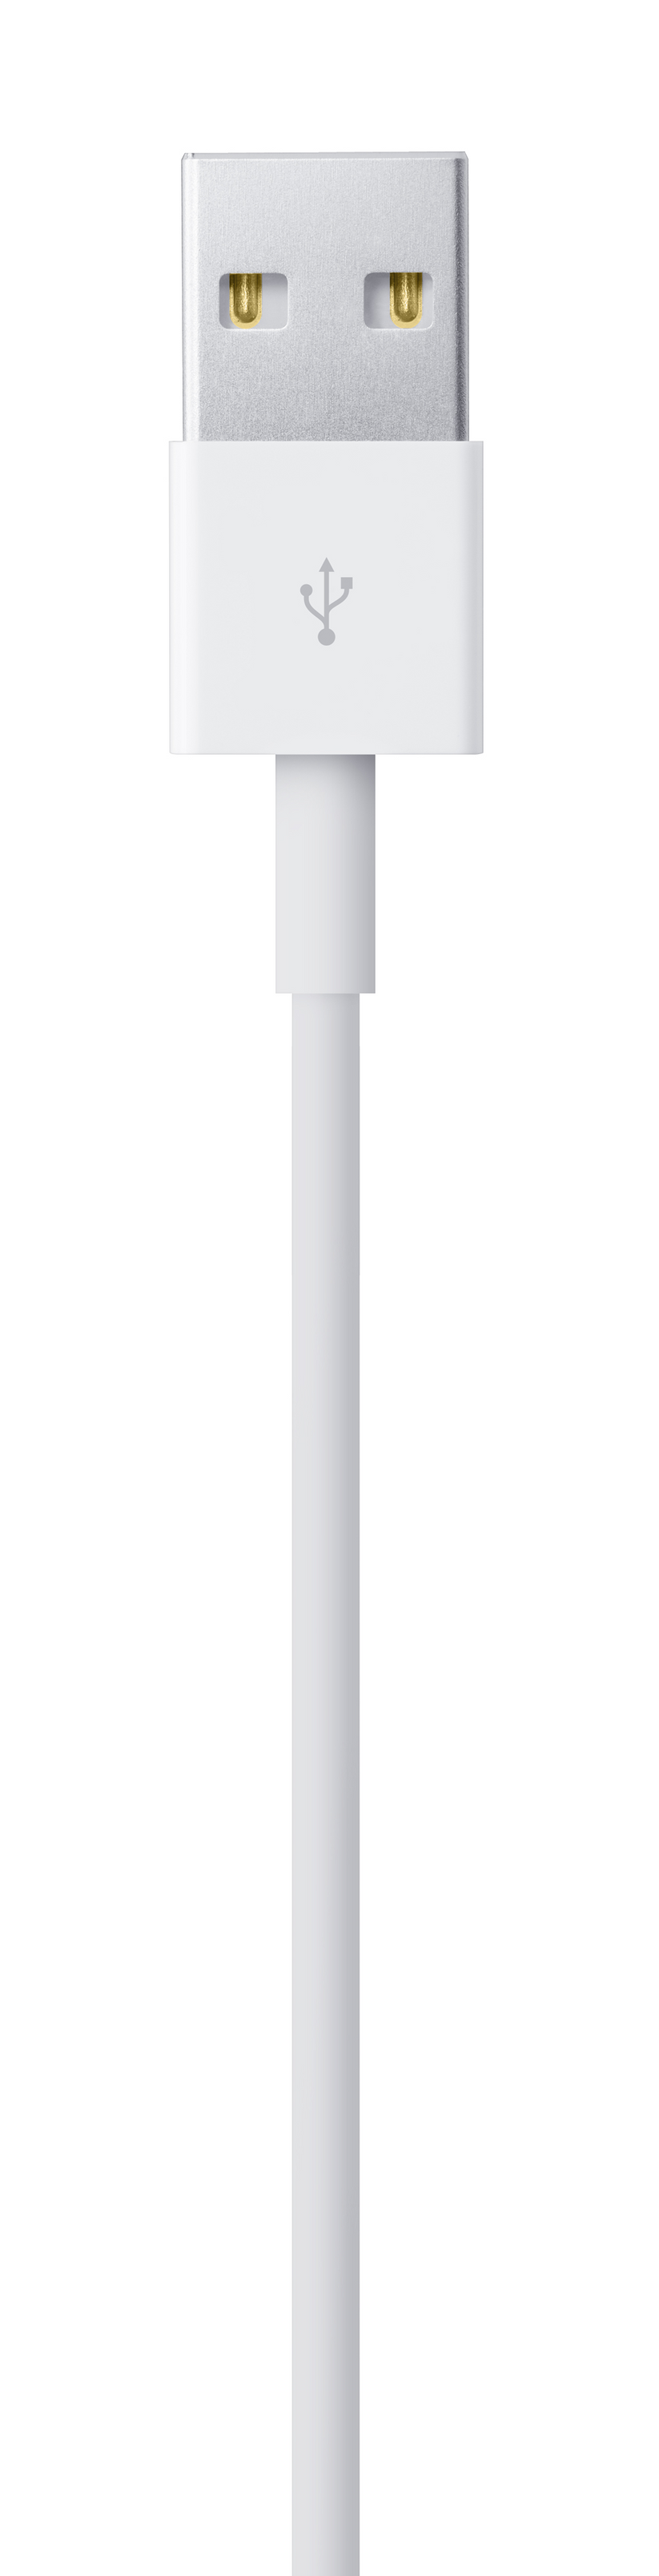 Cable Usb A Conector Iphone Original Apple, 2 Metros, color Blanco